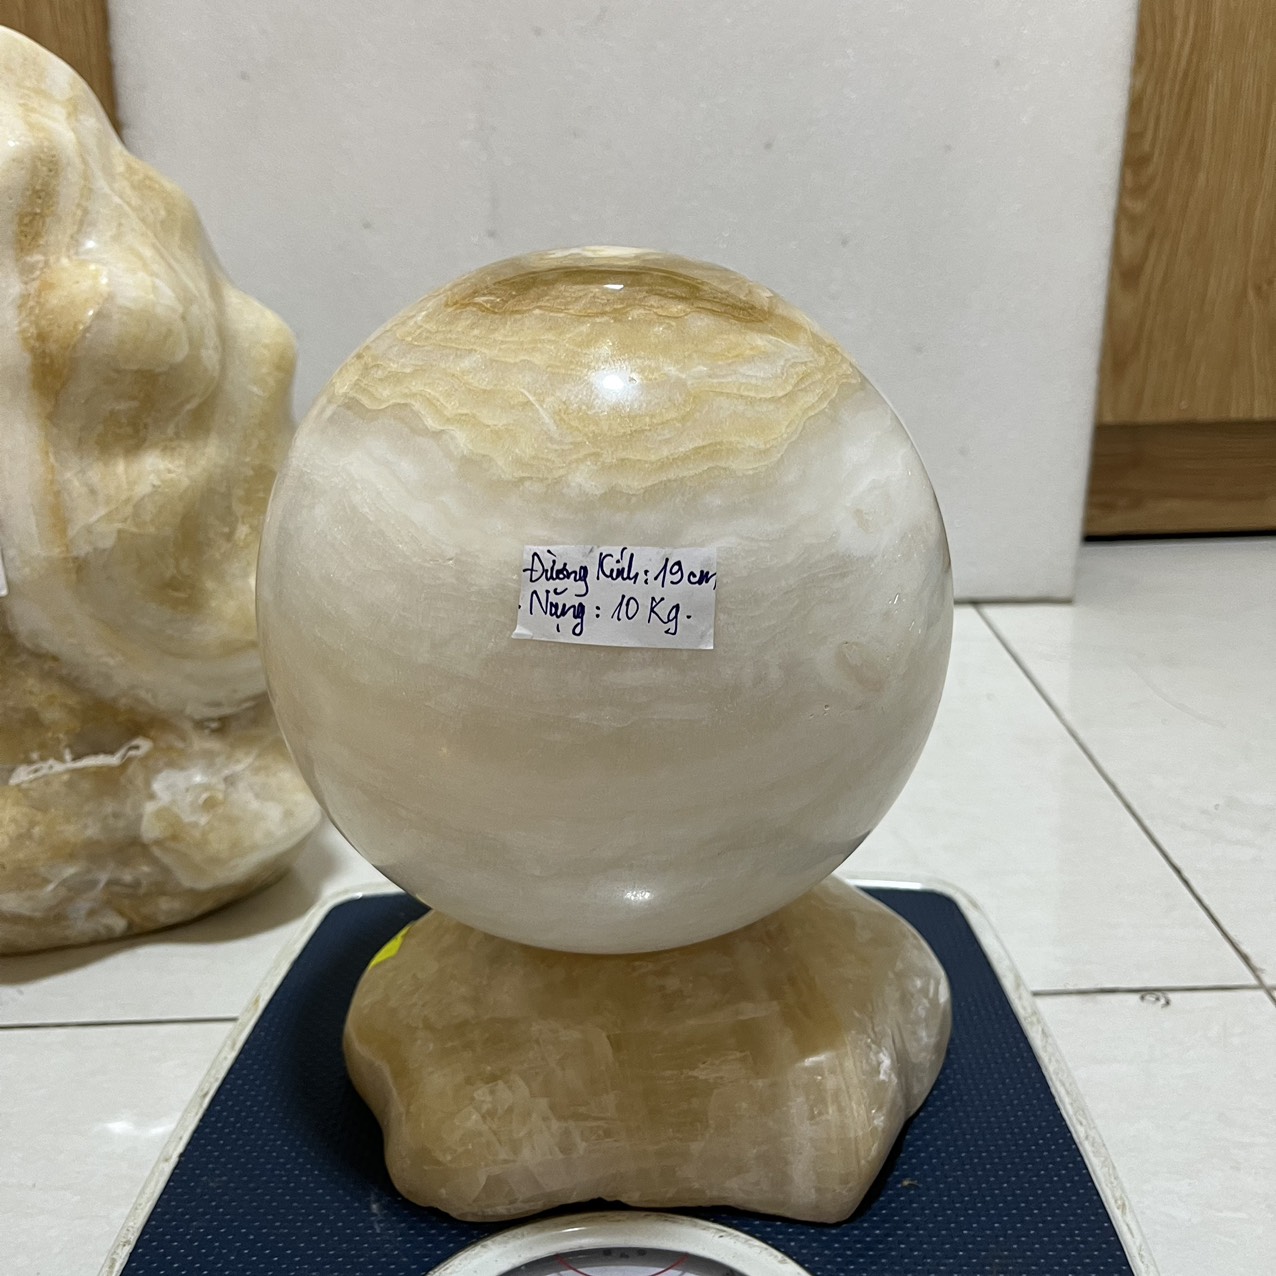 Quả cầu phong thủy đá tự nhiên màu vàng trắng đường kính 19 cm nặng 11kg  cho mệnh Kim và Thổ đá Việt Nam